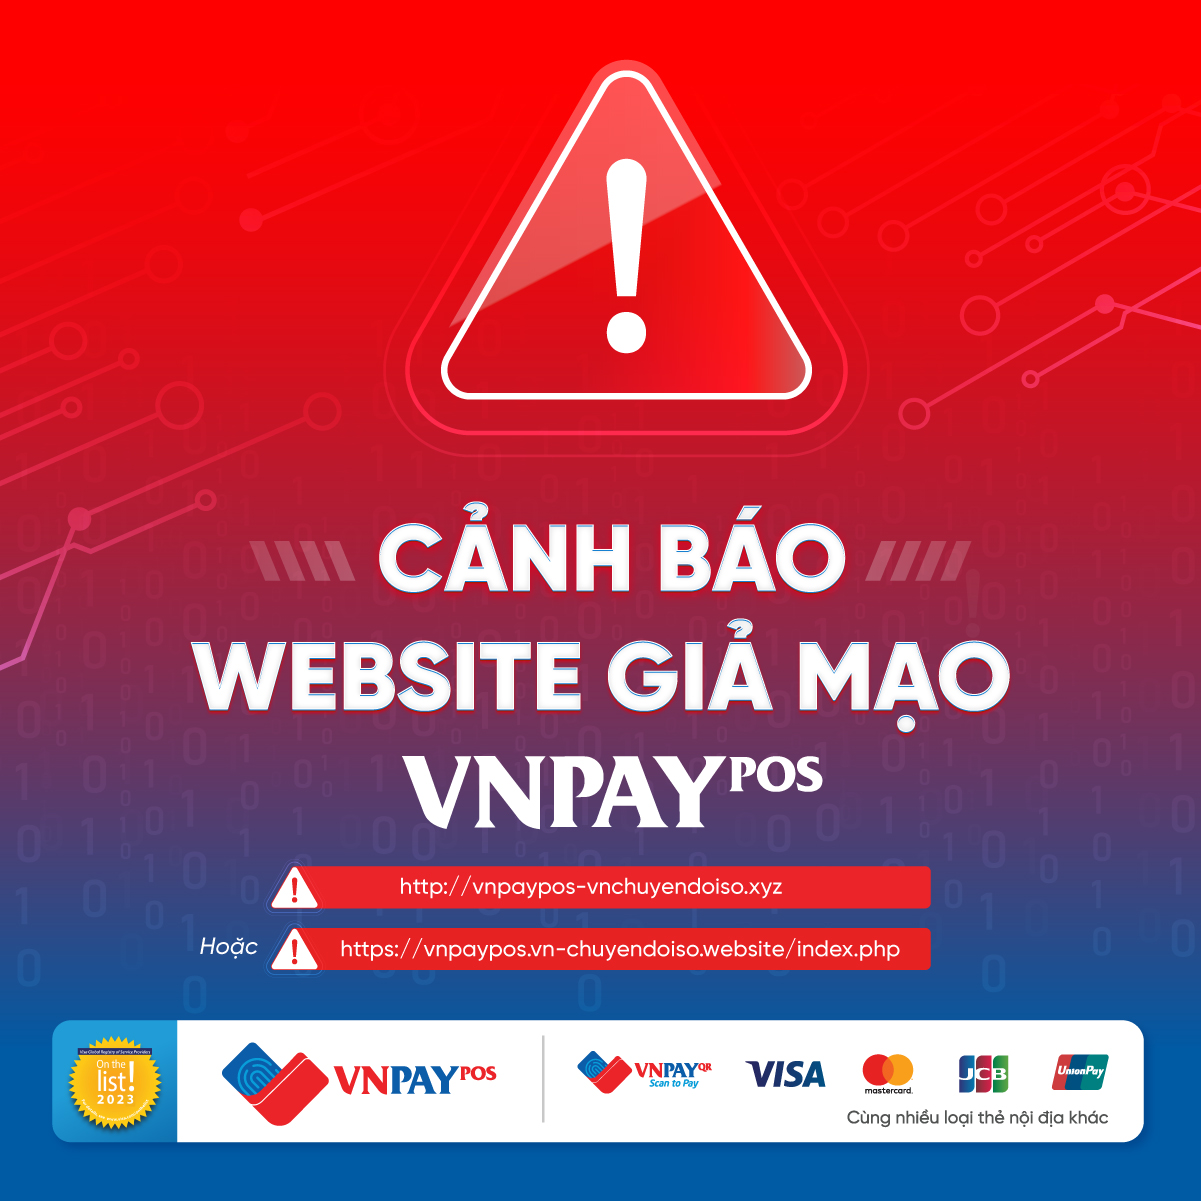 website giả mạo VNPAY-POS